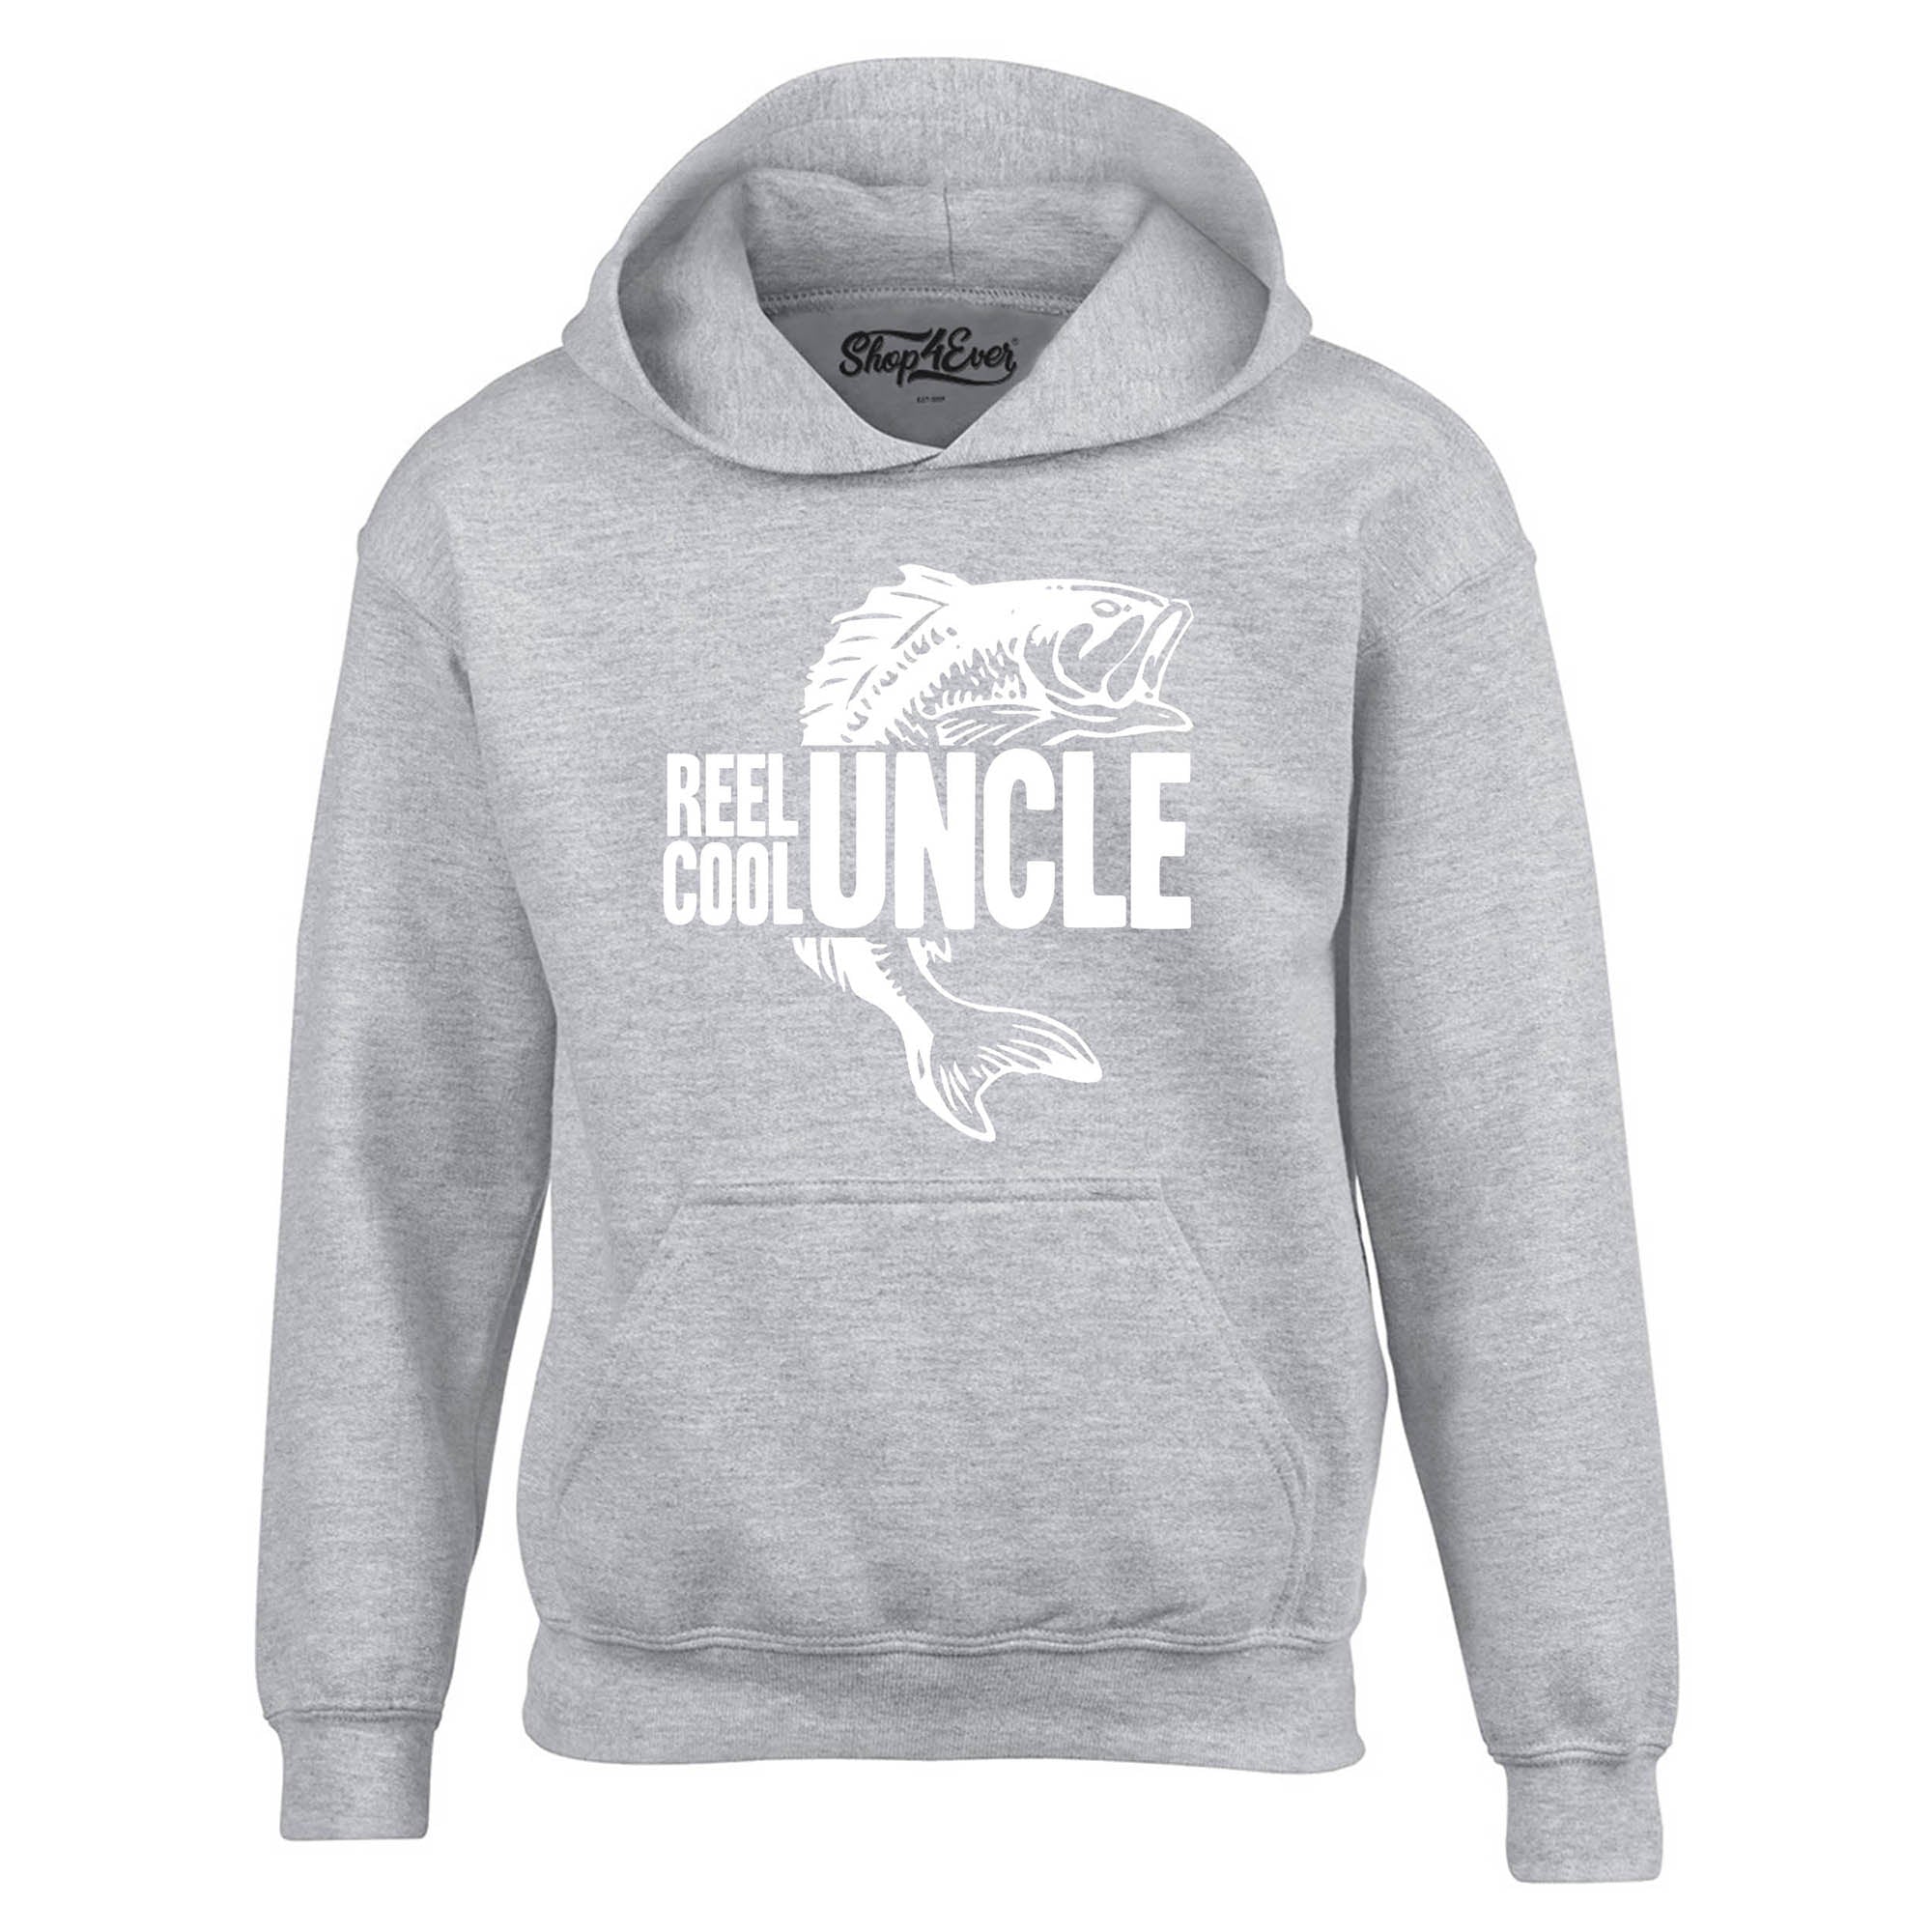 Reel Cool Uncle Hoodie Sweatshirts